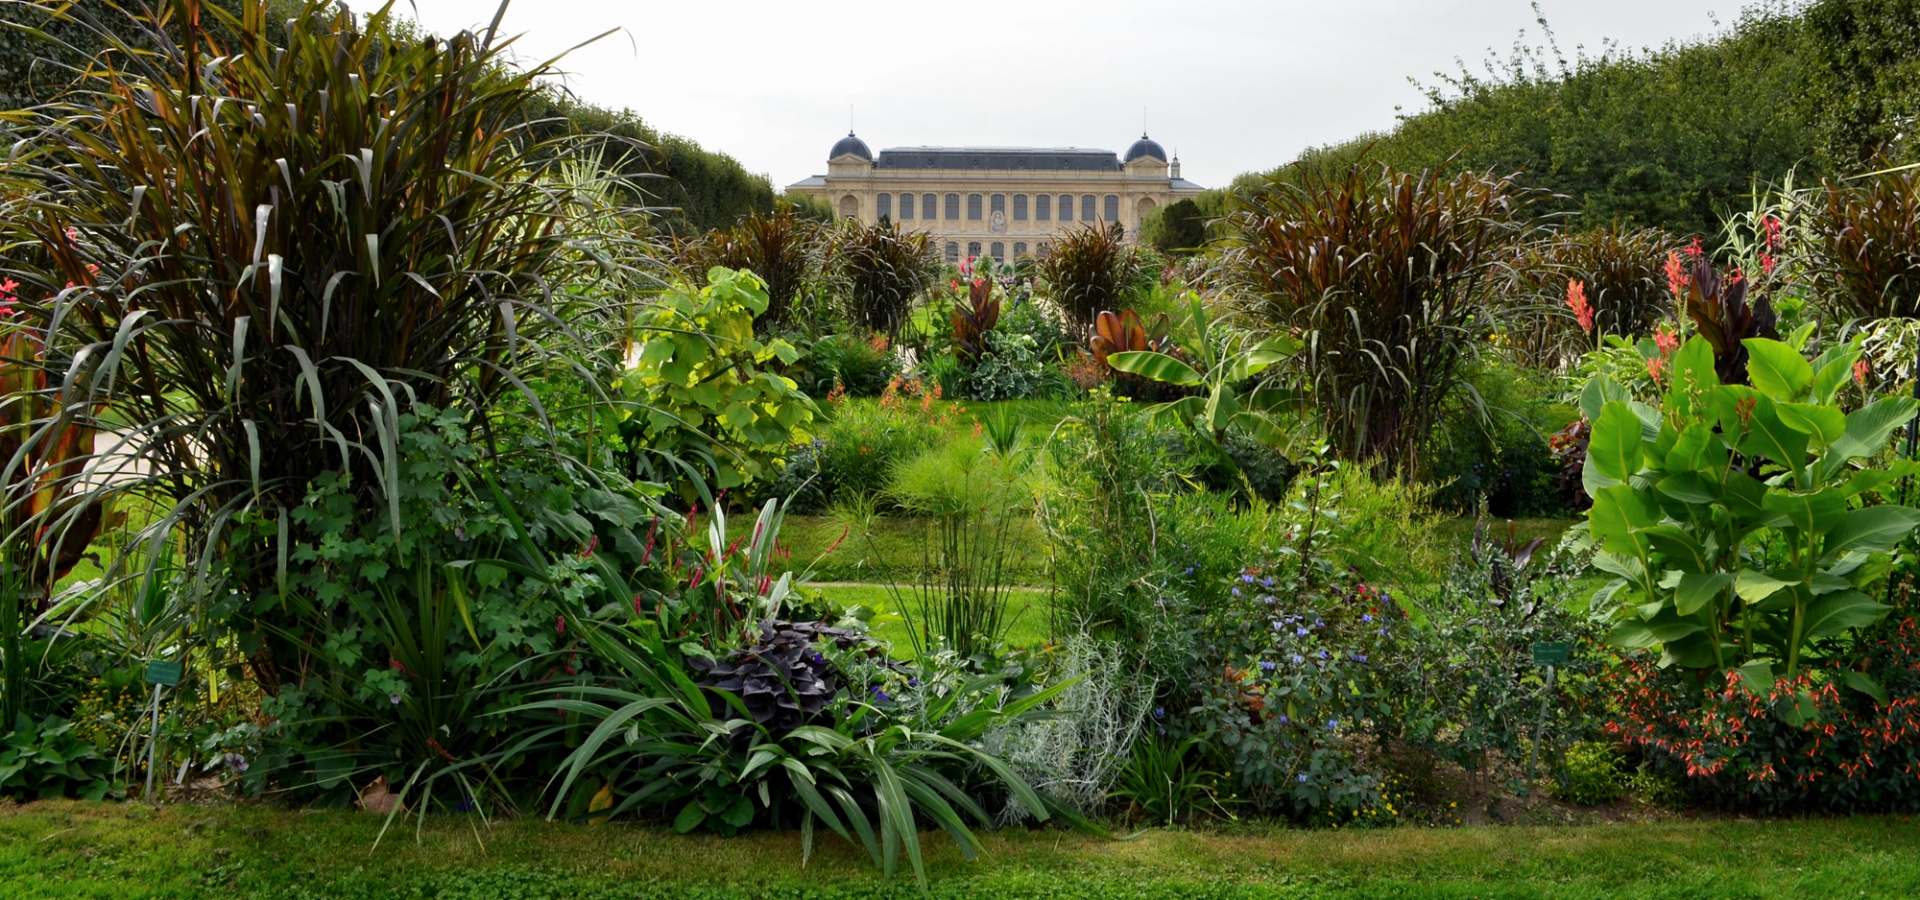 19-facts-about-jardin-des-plantes-botanical-garden-events